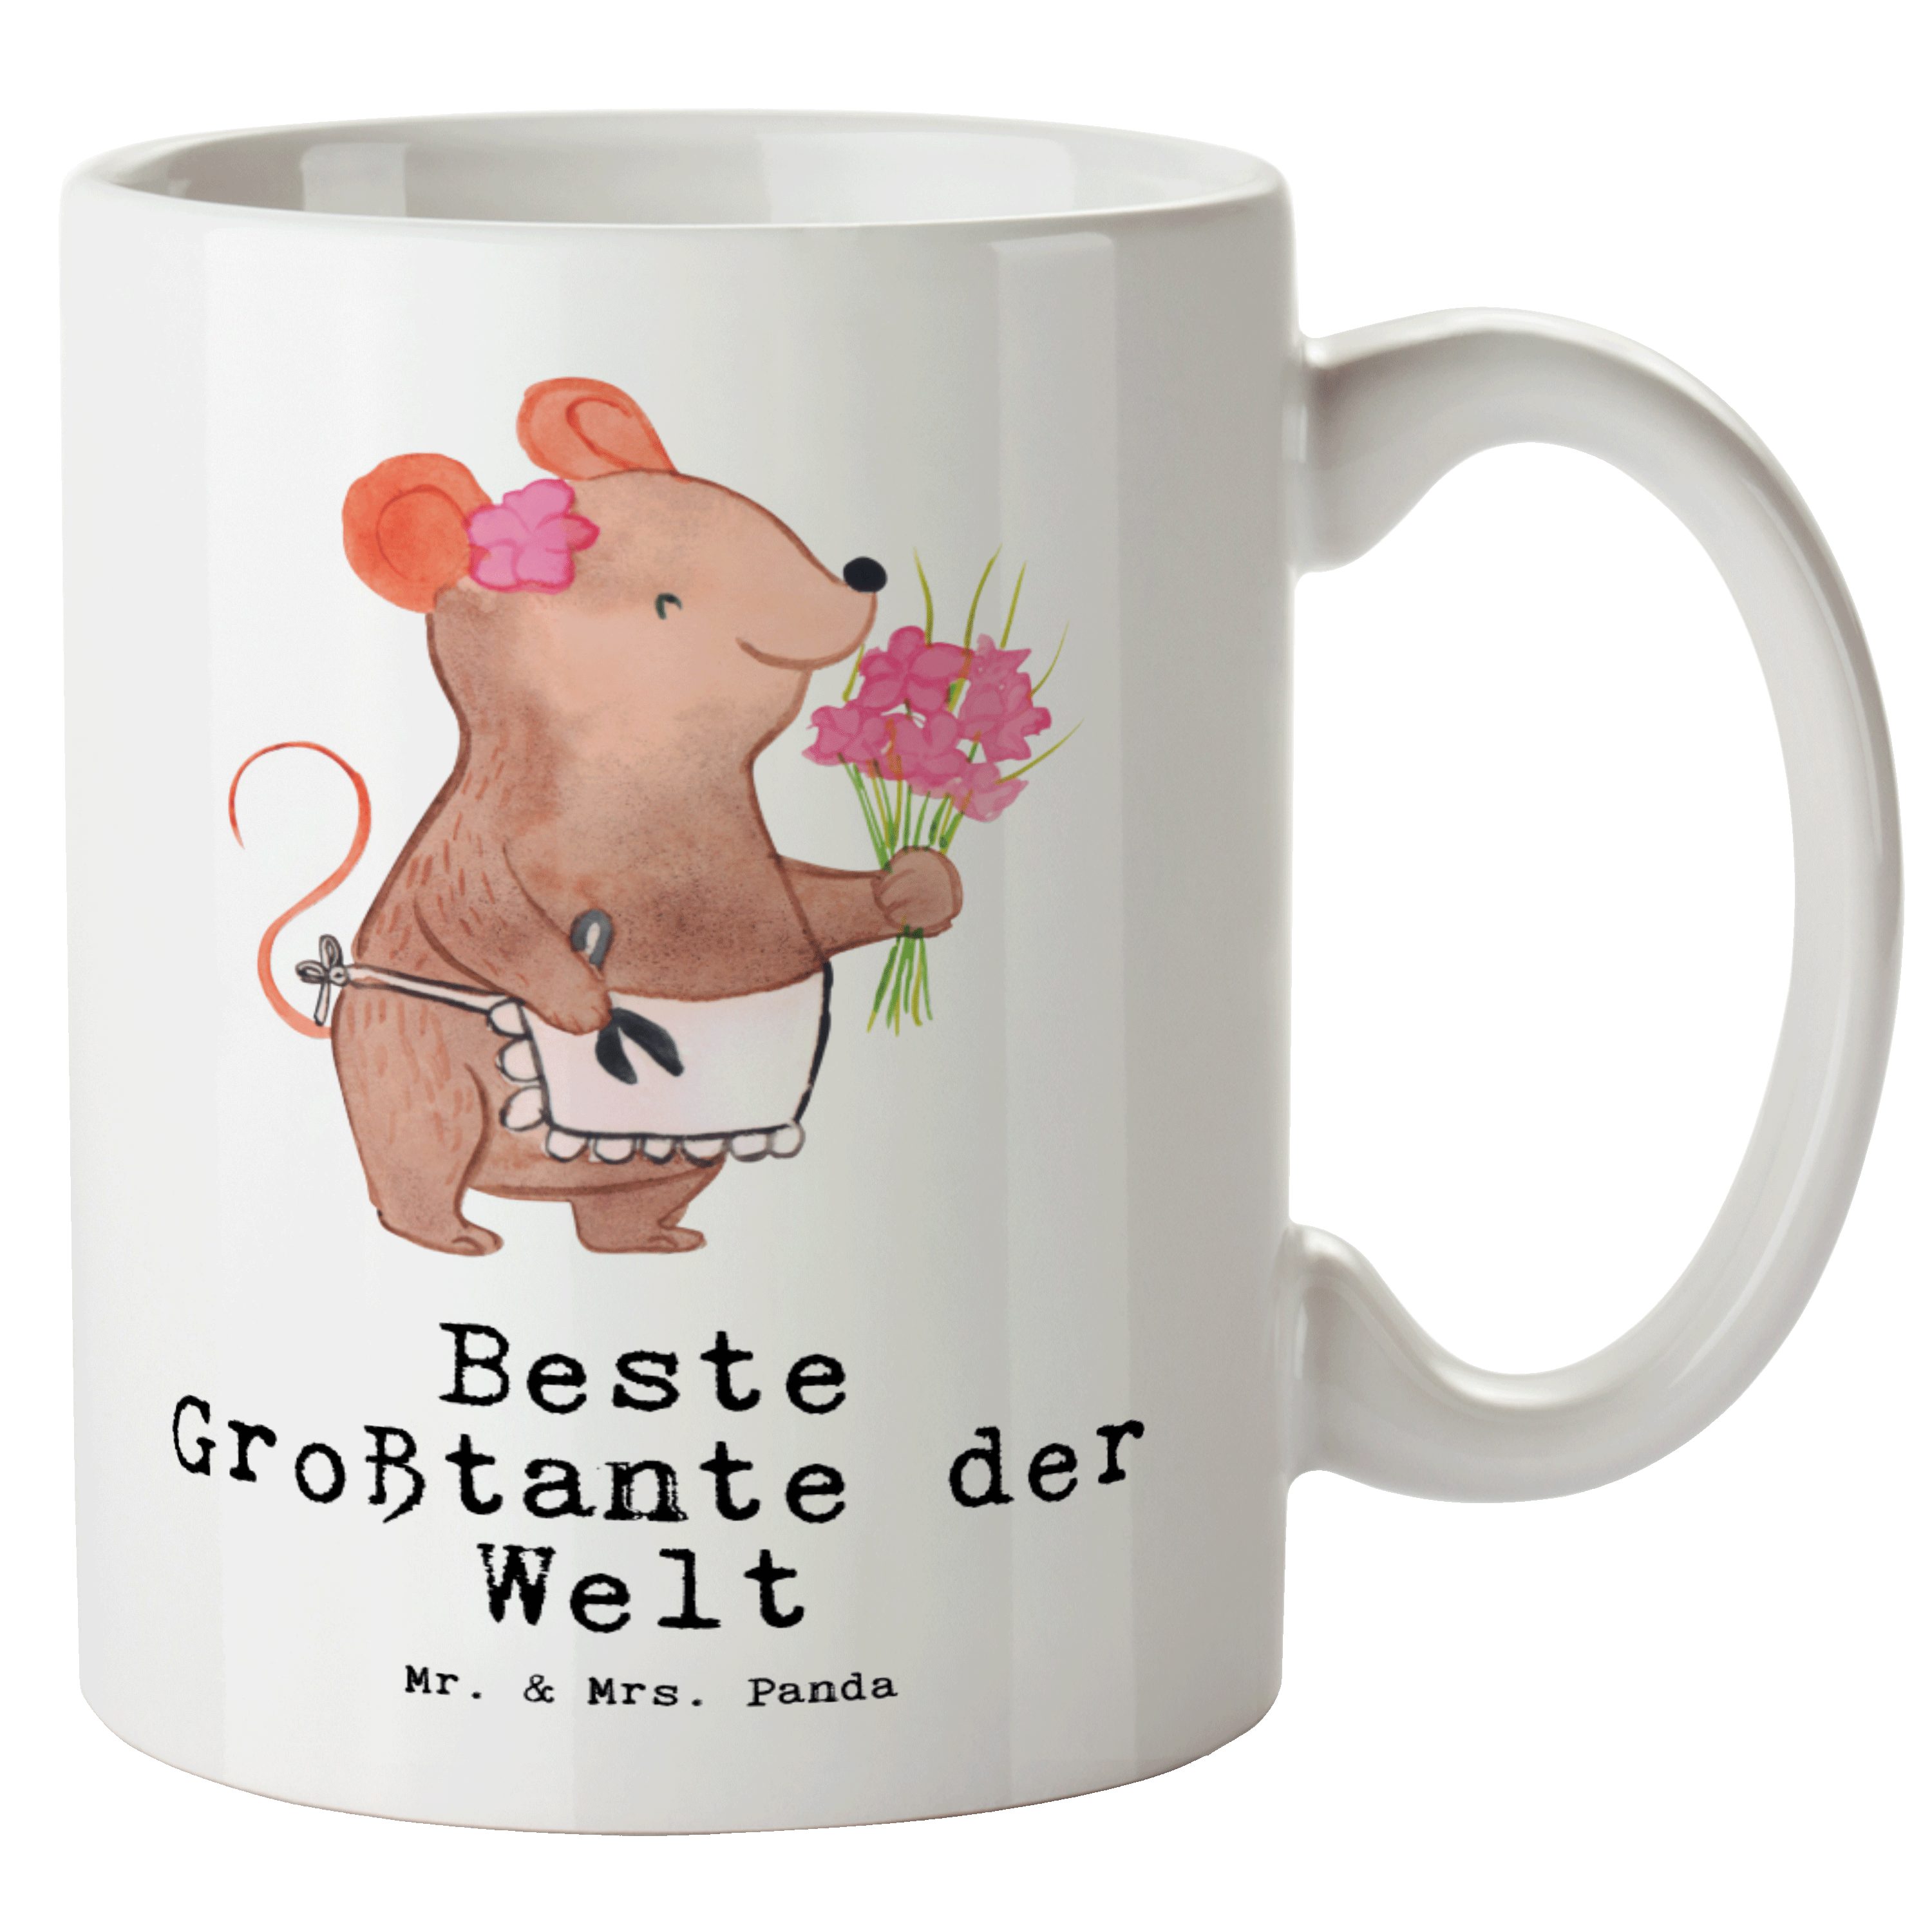 Mr. & Mrs. Panda Tasse Maus Beste Großtante der Welt - Weiß - Geschenk, Kleinigkeit, Geburts, XL Tasse Keramik